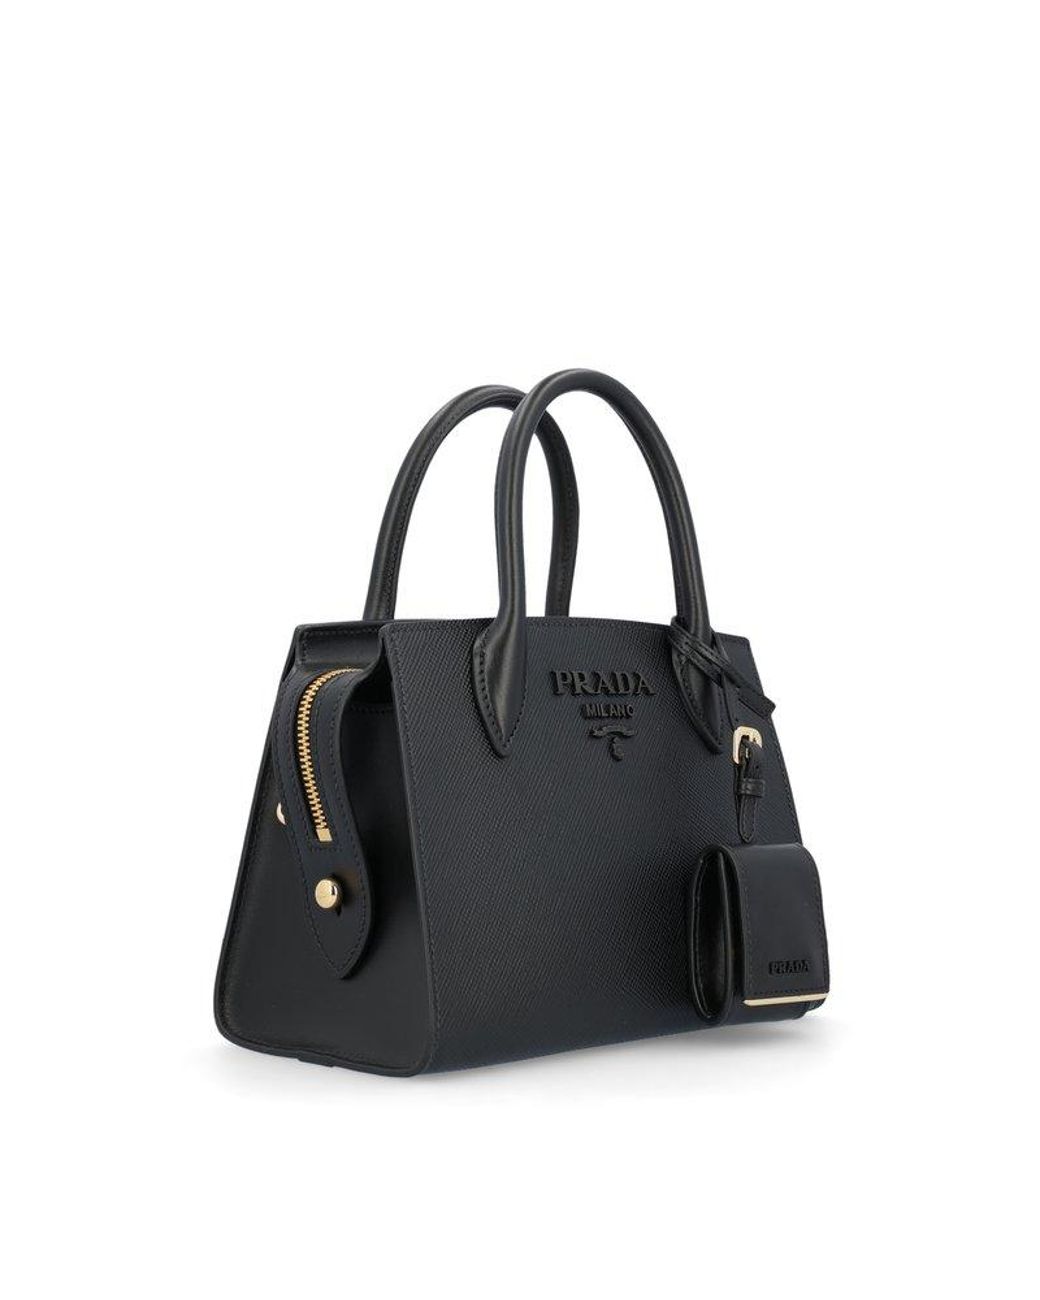 Prada Monochrome Saffiano Bag - Red Shoulder Bags, Handbags - PRA826834